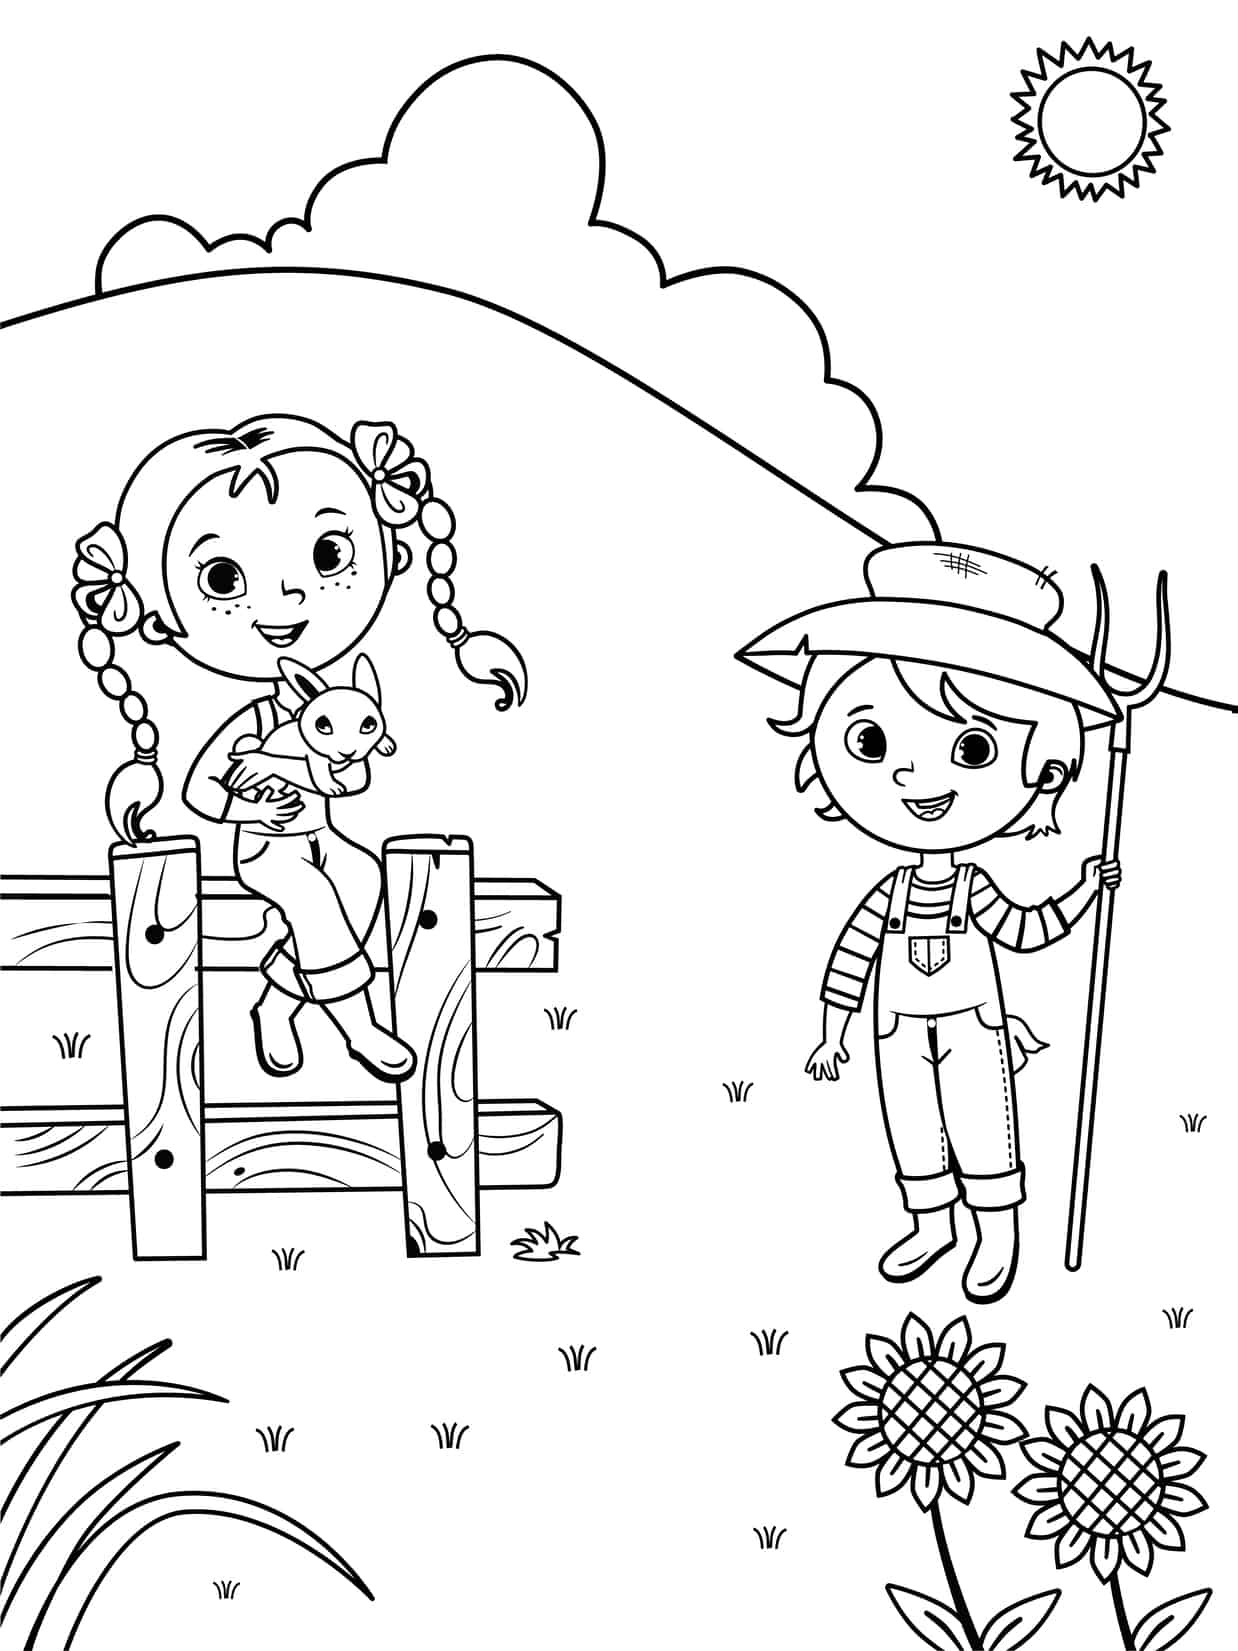 Menino e menina na fazenda para pintar